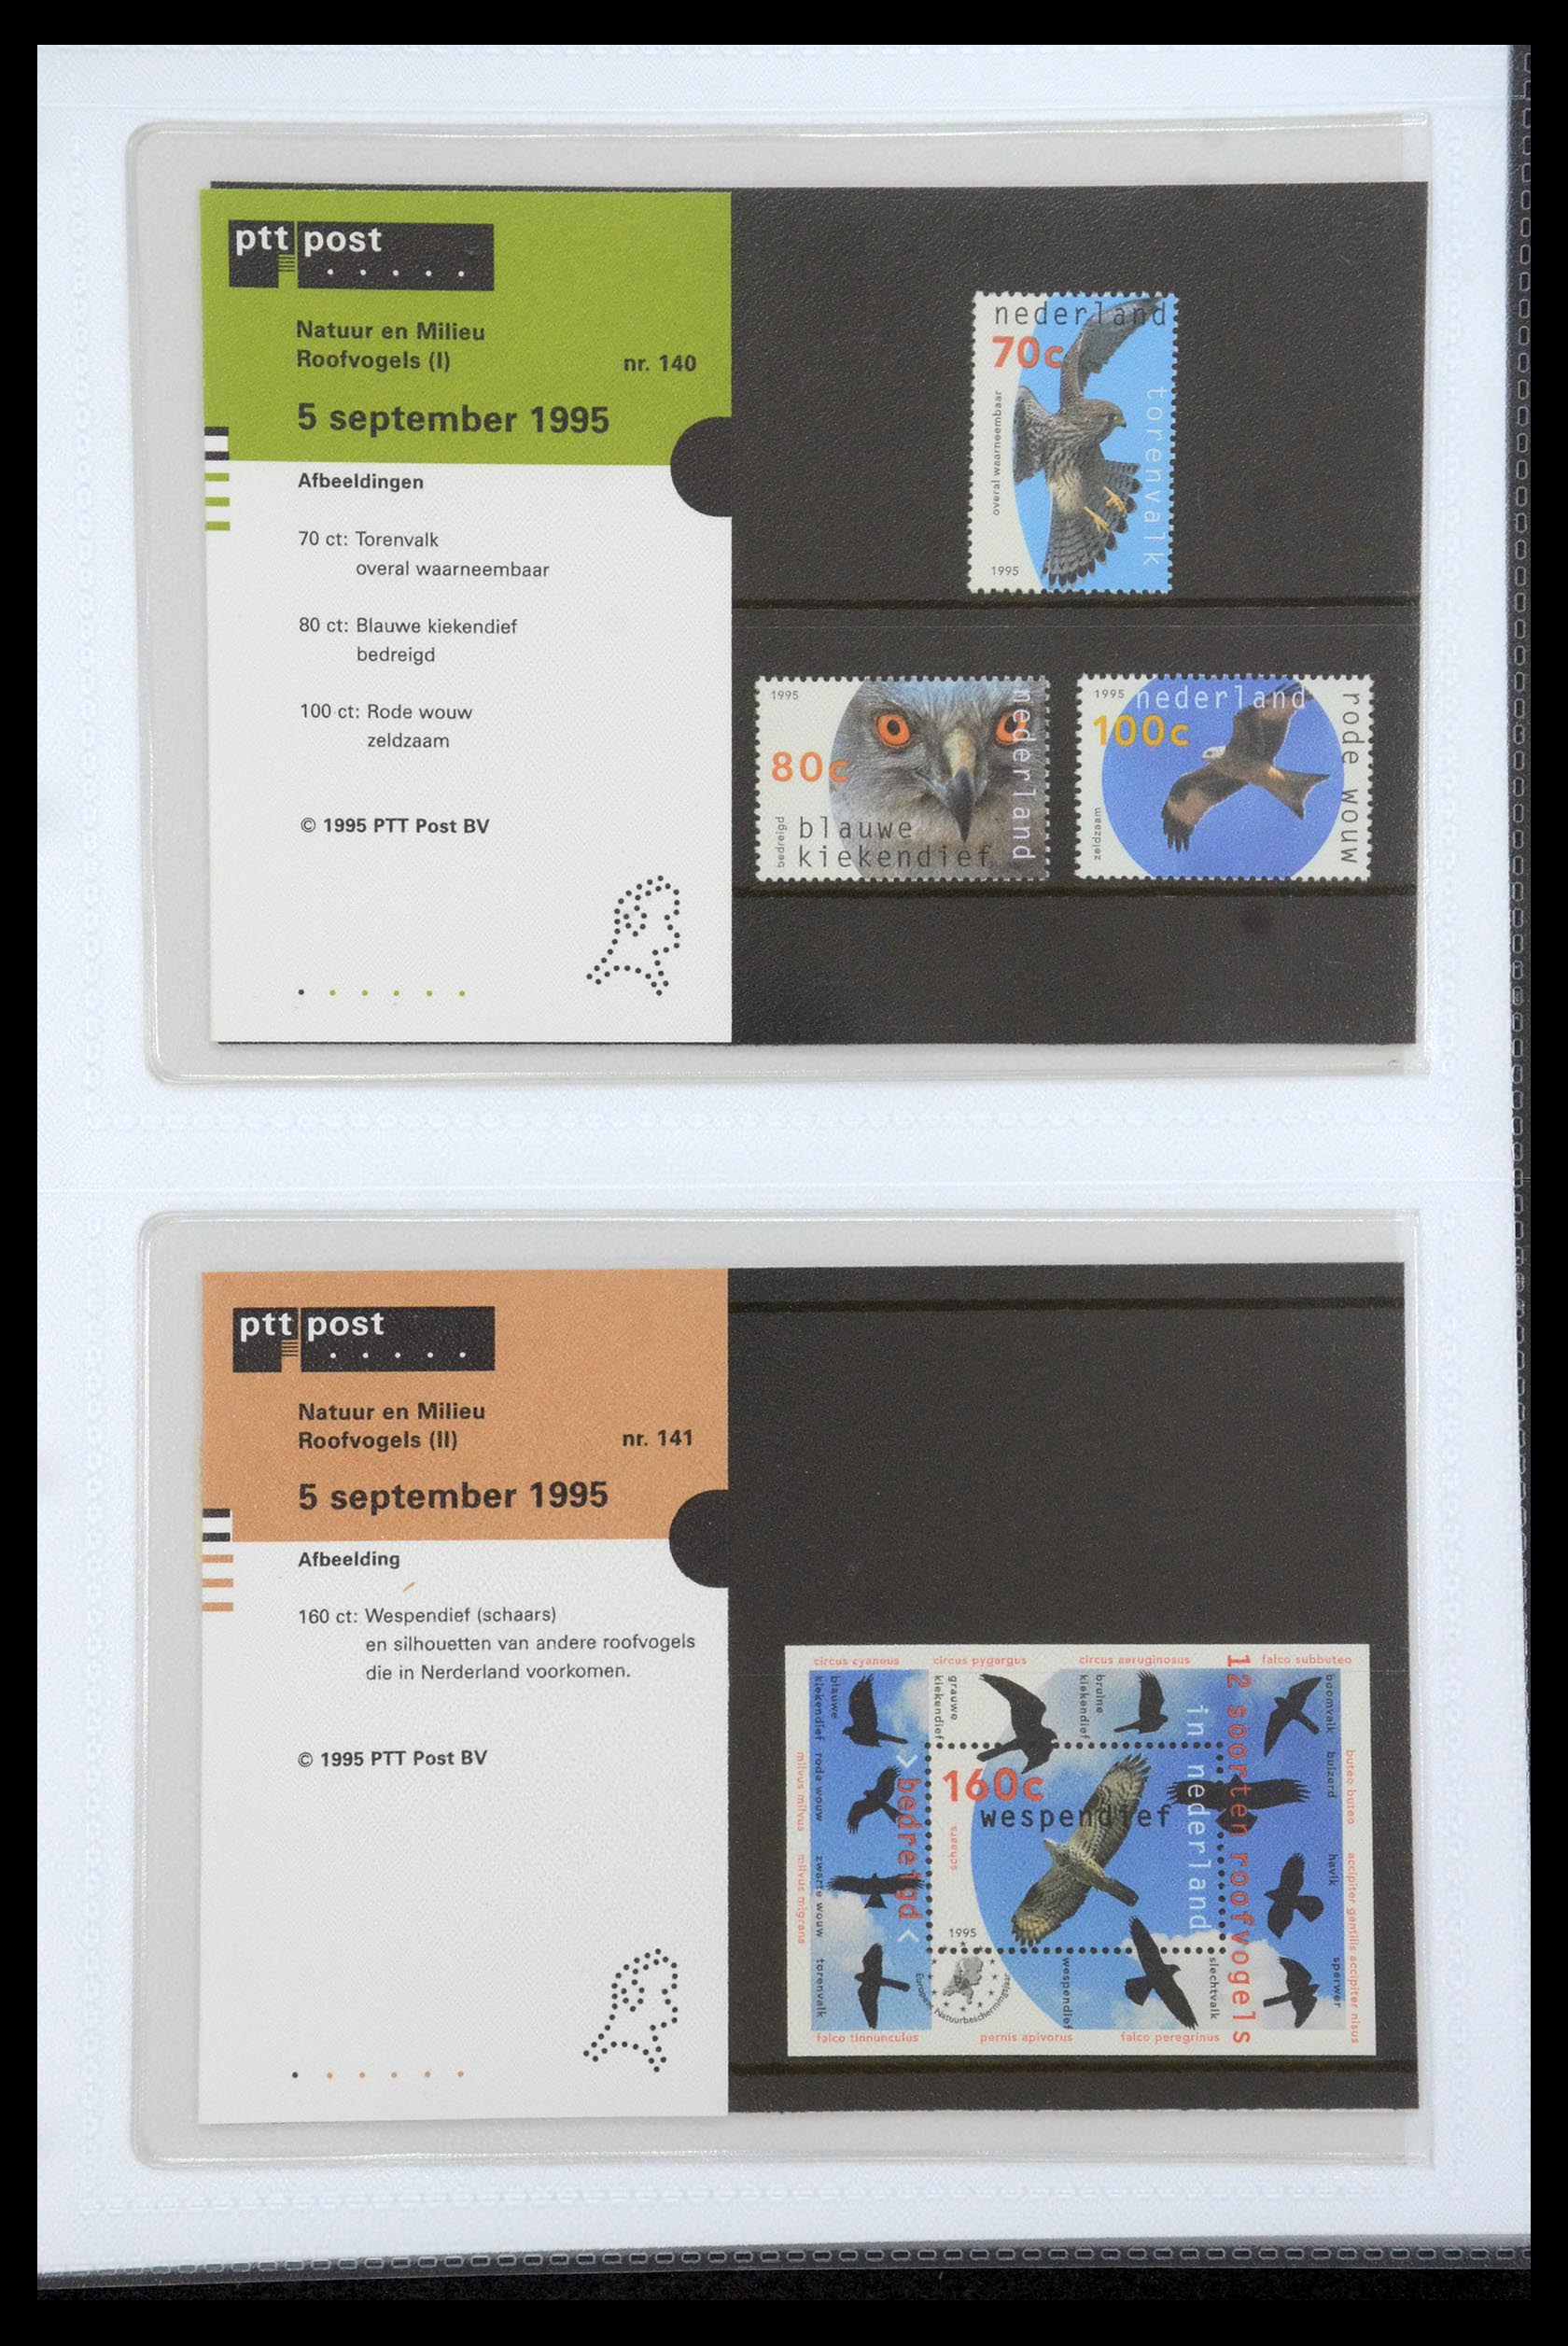 35947 073 - Stamp Collection 35947 Netherlands PTT presentation packs 1982-2019!